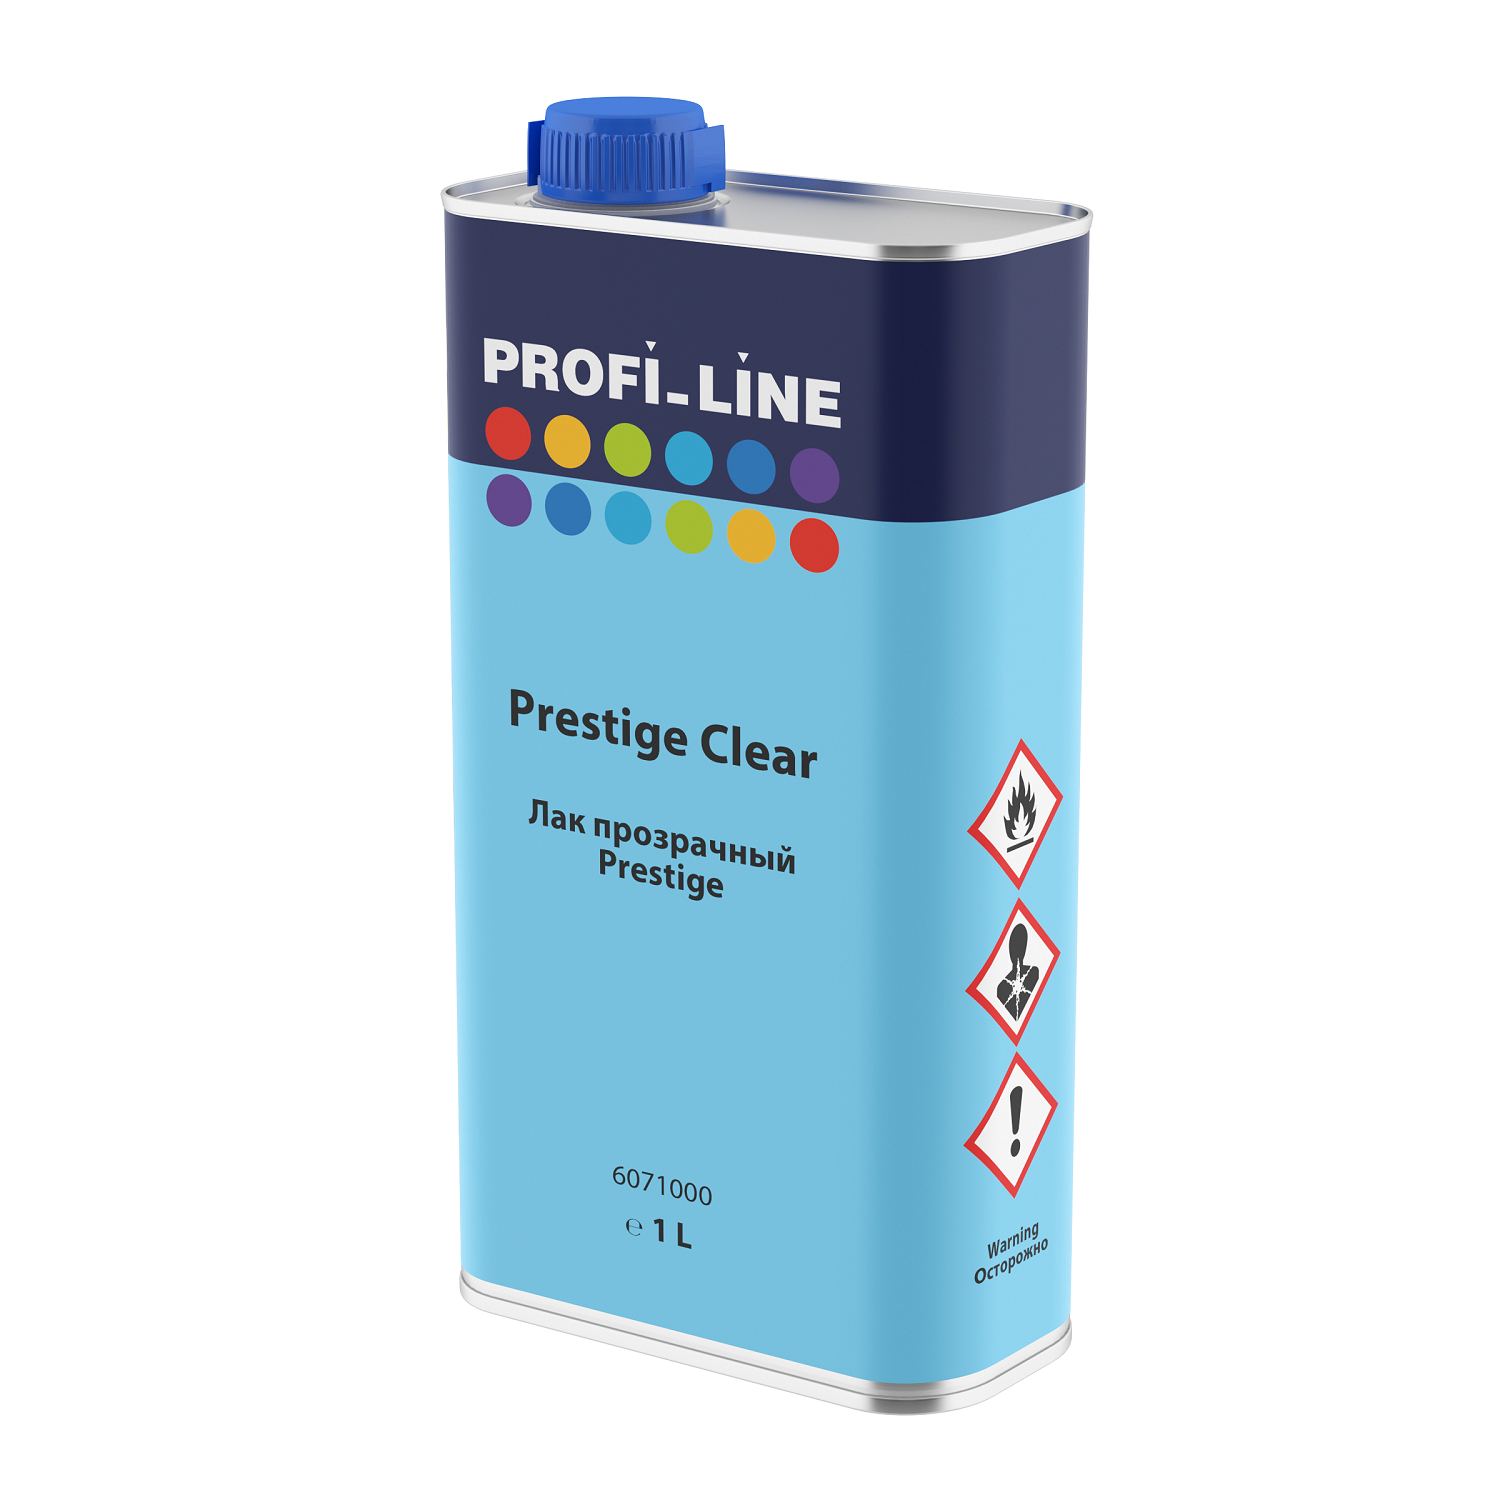 Лак позрачный Profi_Line Prestige (1 л)